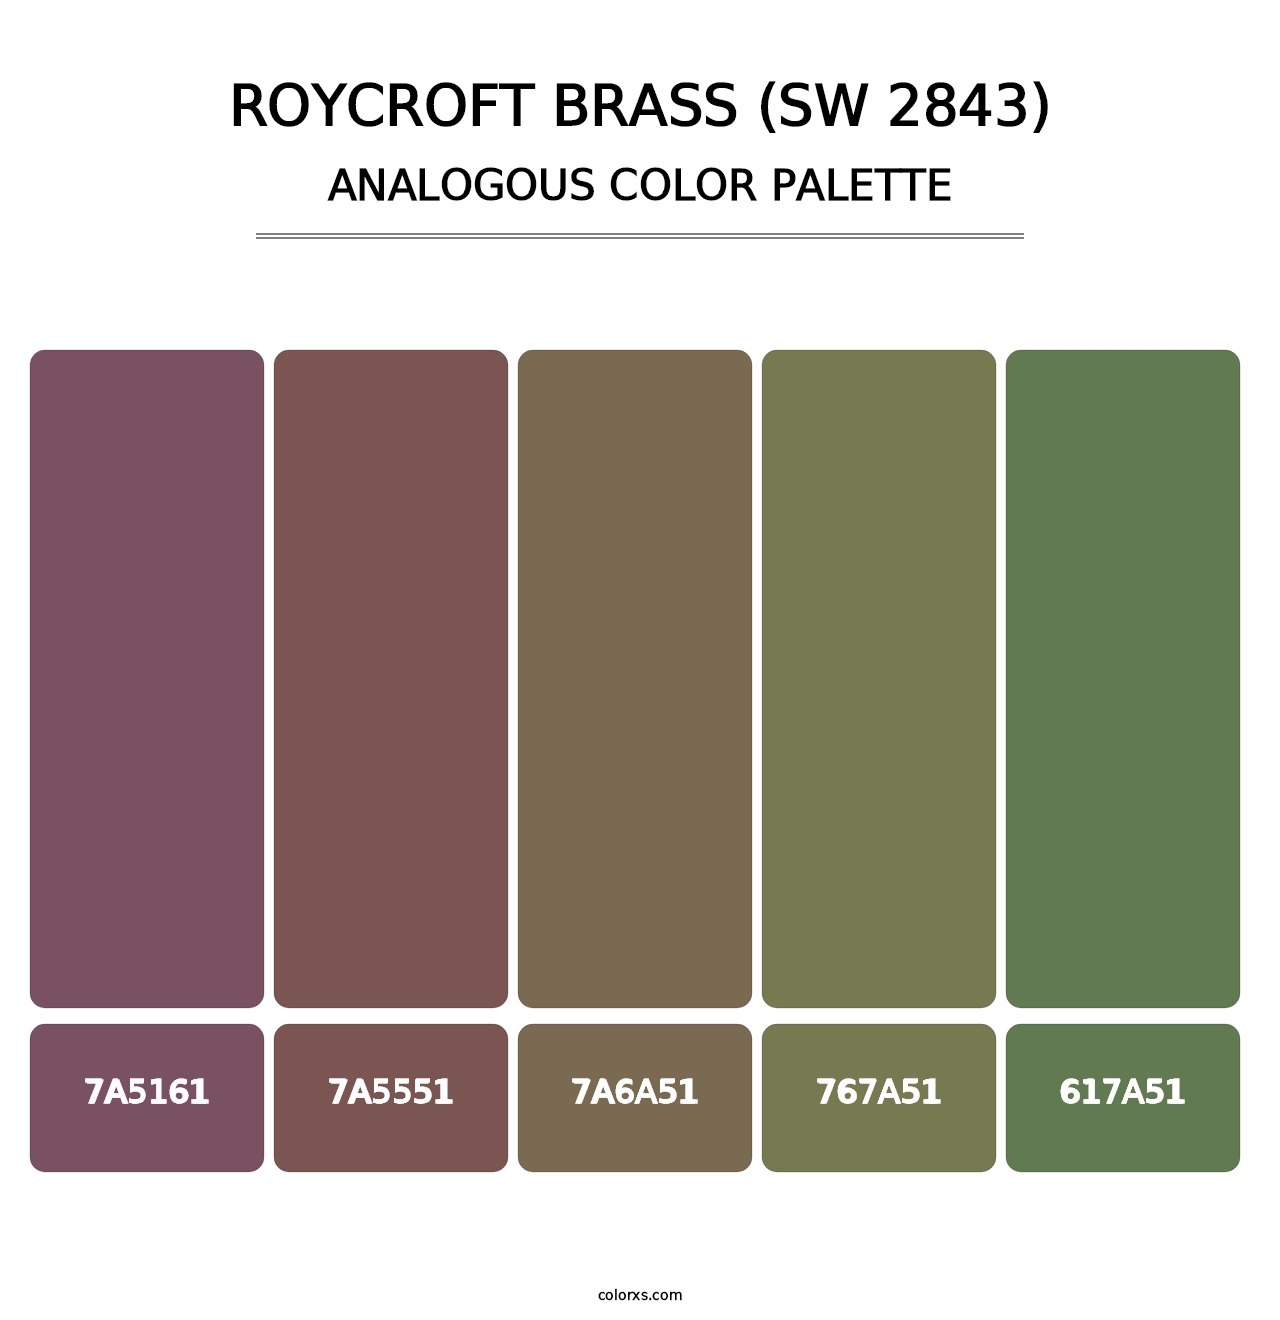 Roycroft Brass (SW 2843) - Analogous Color Palette